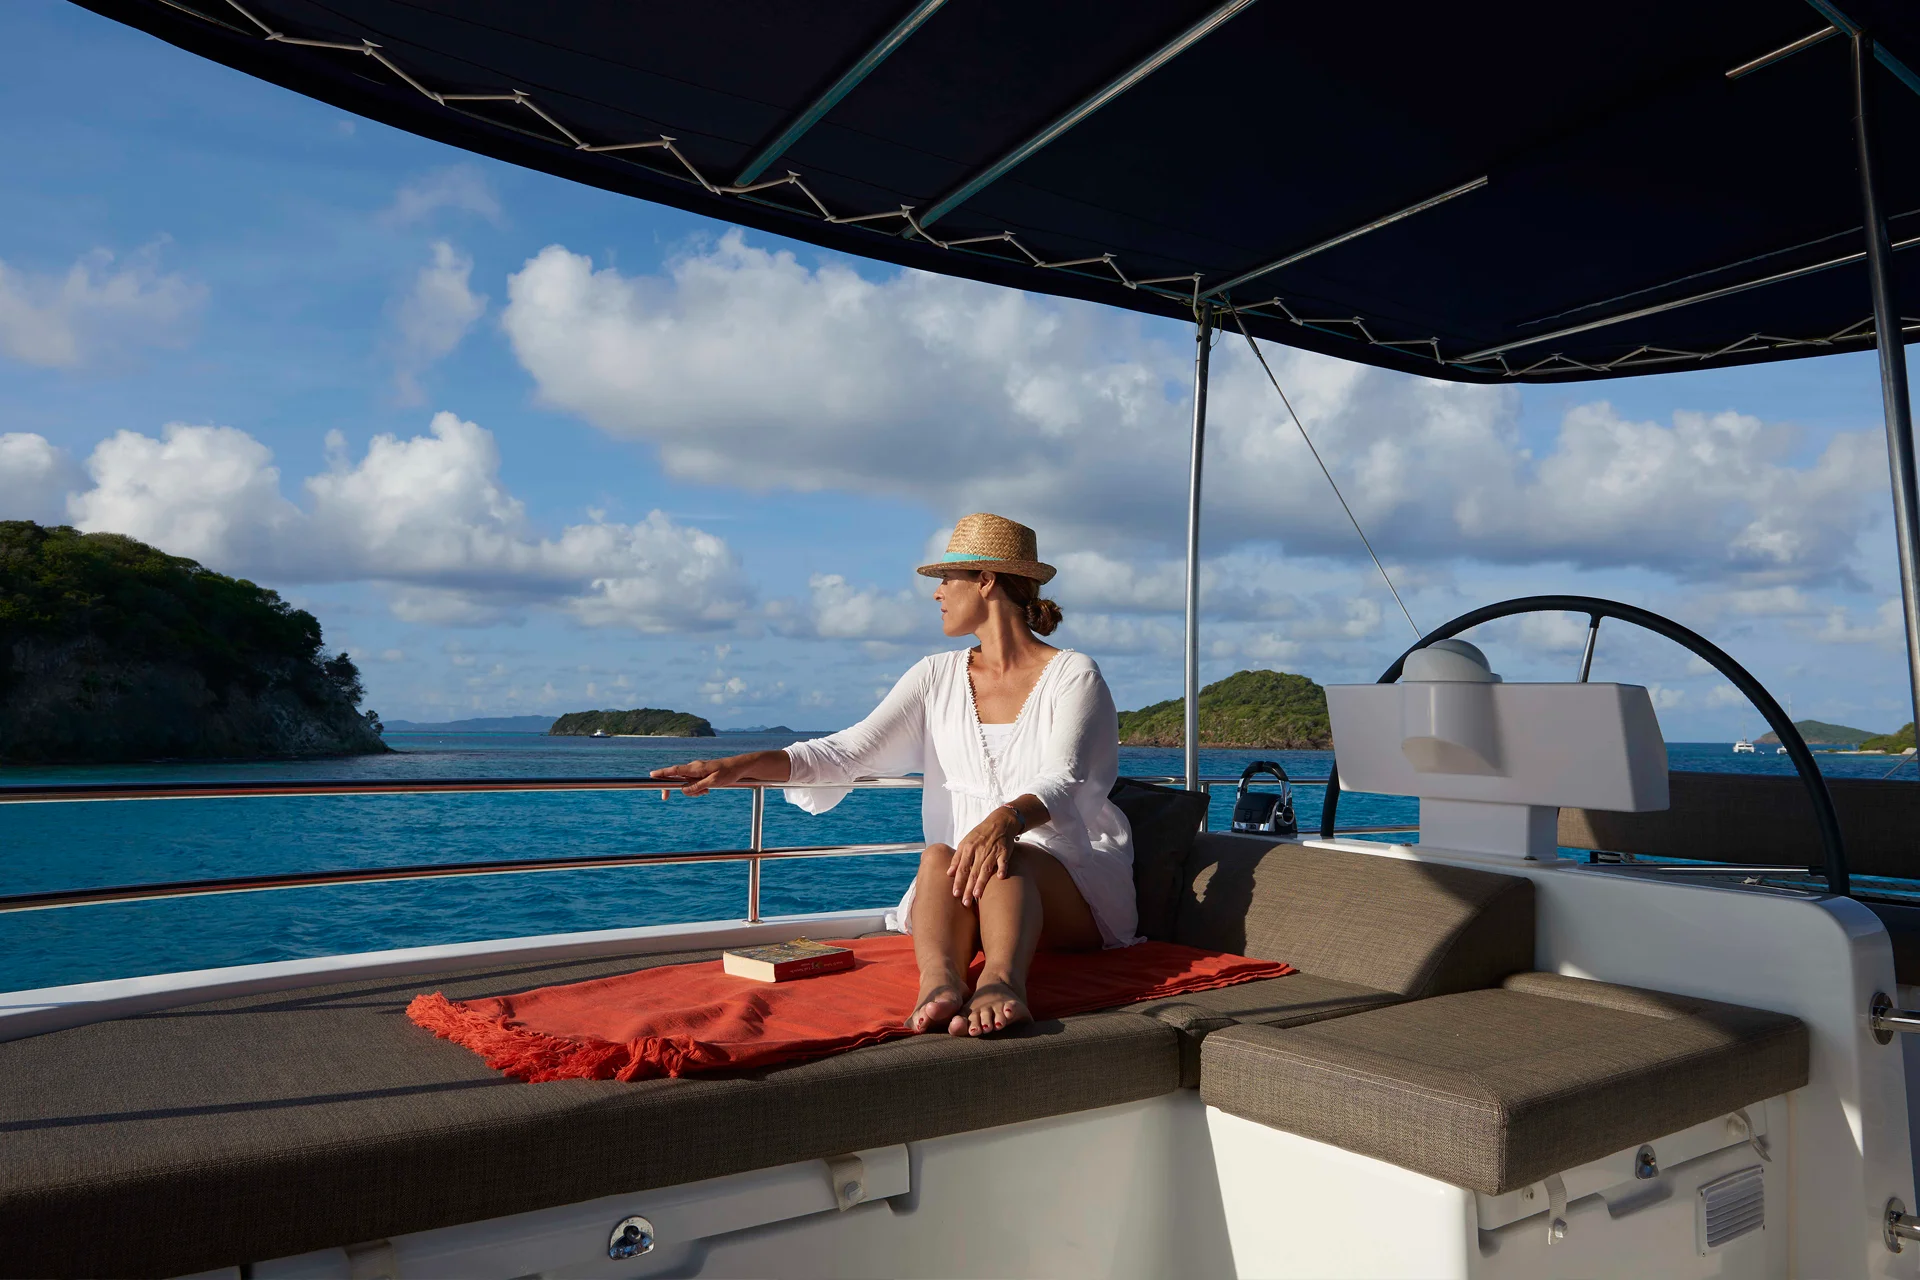 Gast genießt Segeltörn auf einer Yachtcharter mit Crew in der Nähe einiger Inseln